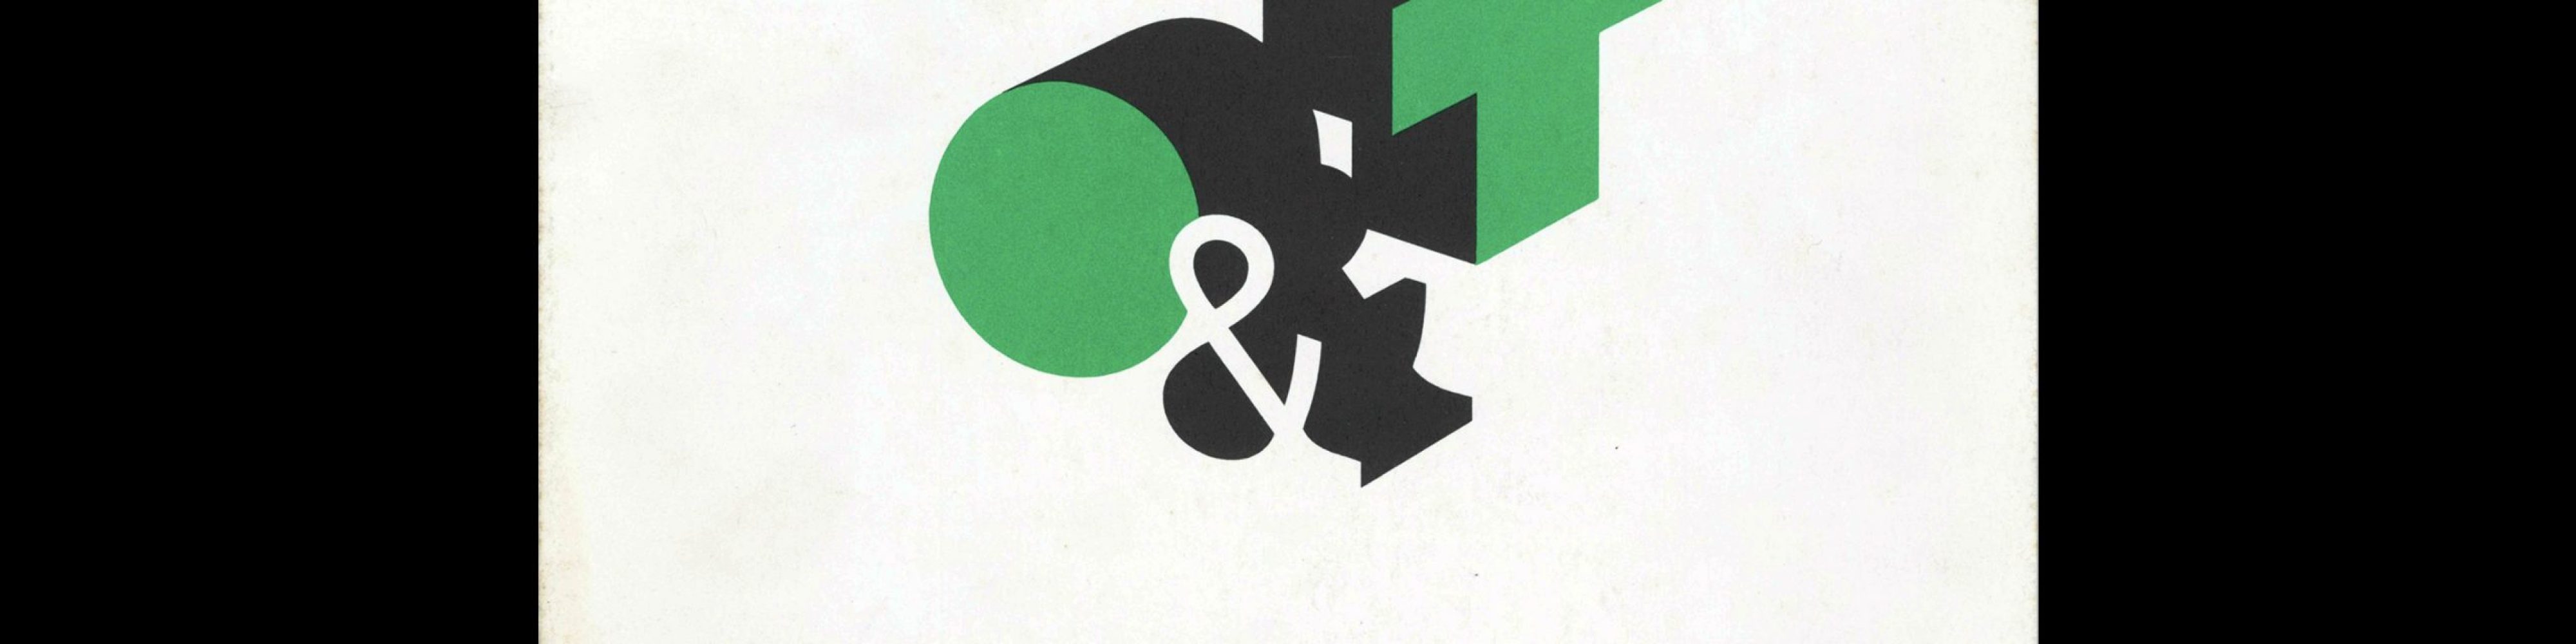 Typografische Monatsblätter, 1, 1979. Cover design by Odermatt & Tissi